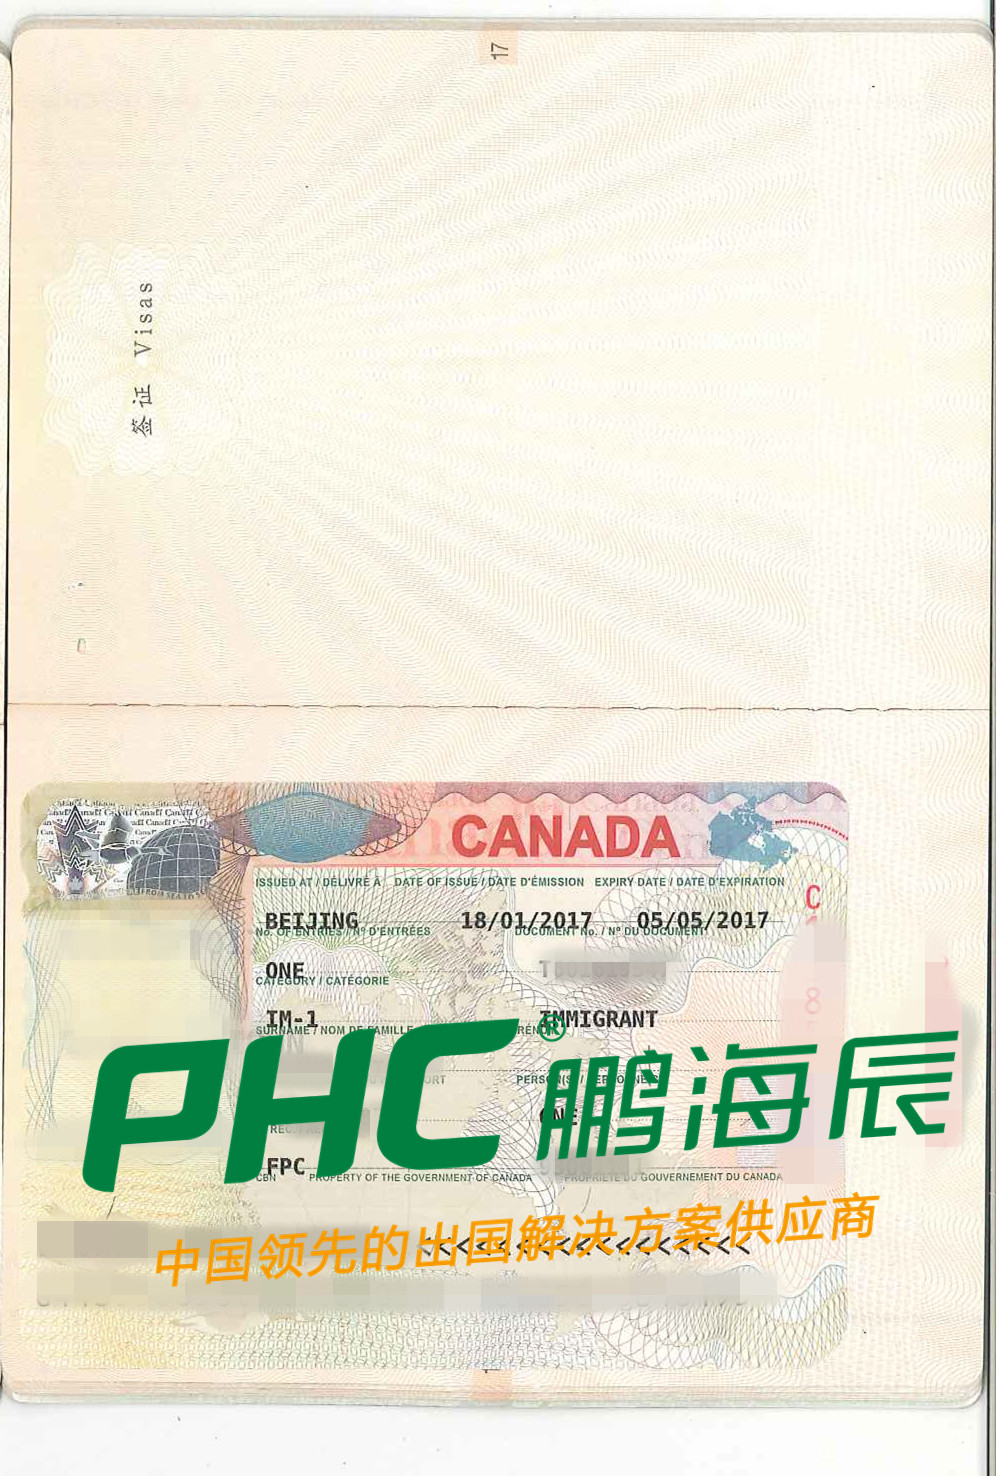 喜讯!三位加拿大移民客户收到贴签护照及登陆